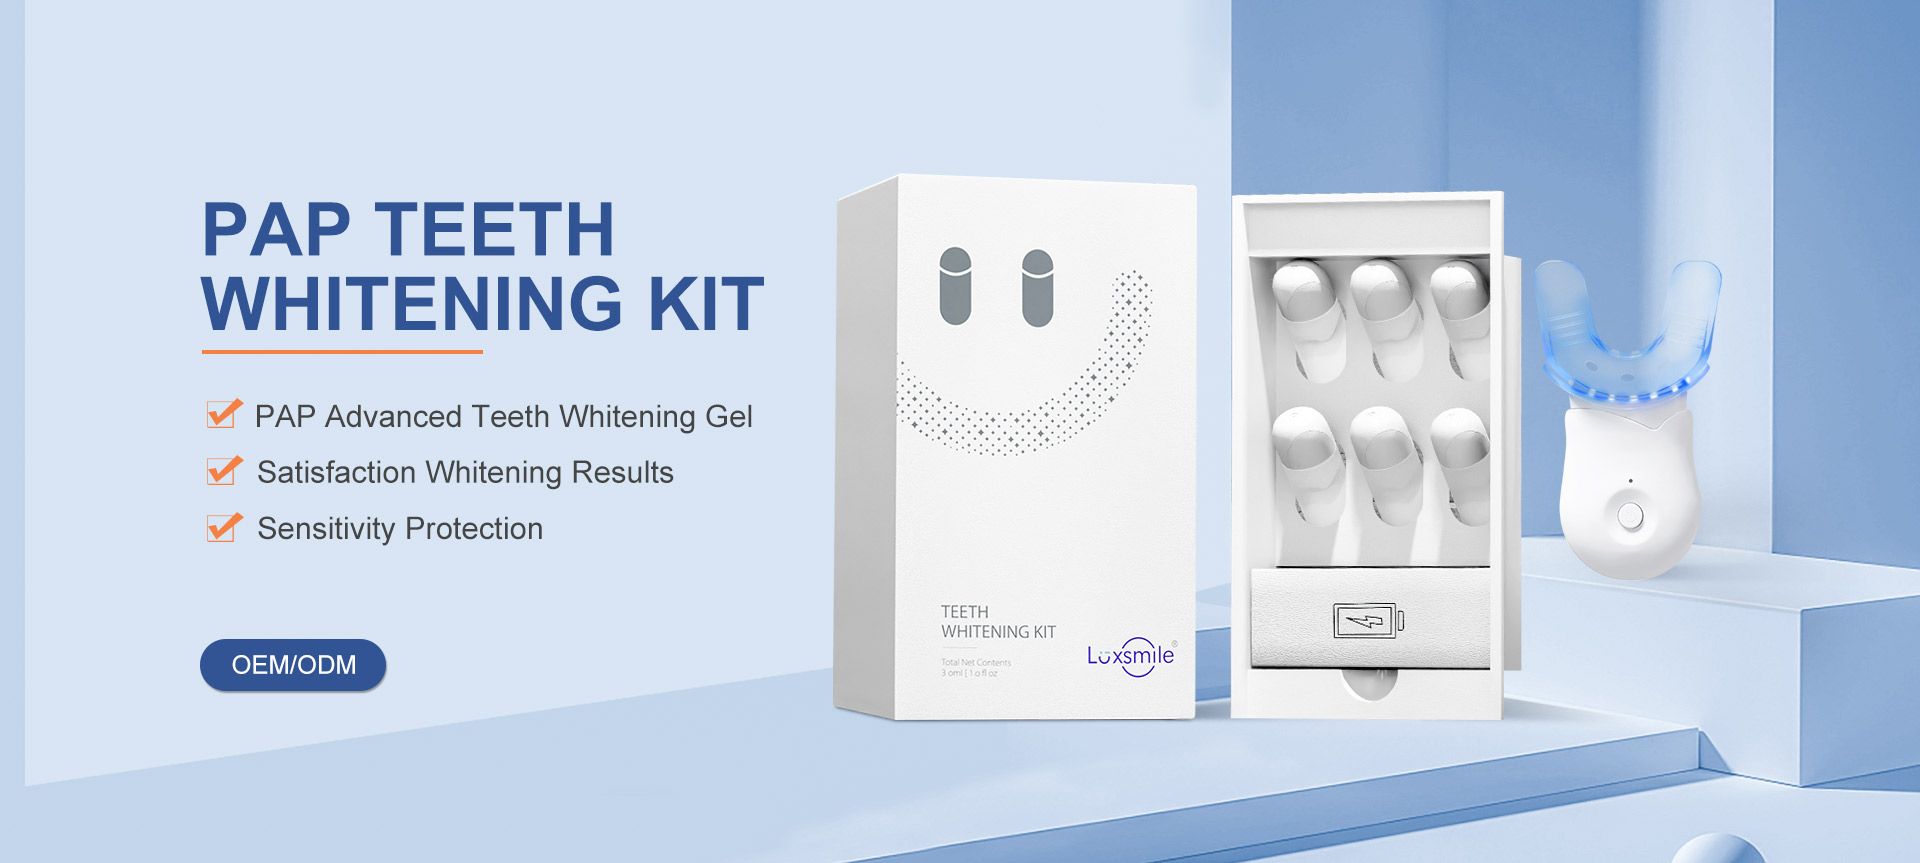 PAP Teeth Whitening Kit